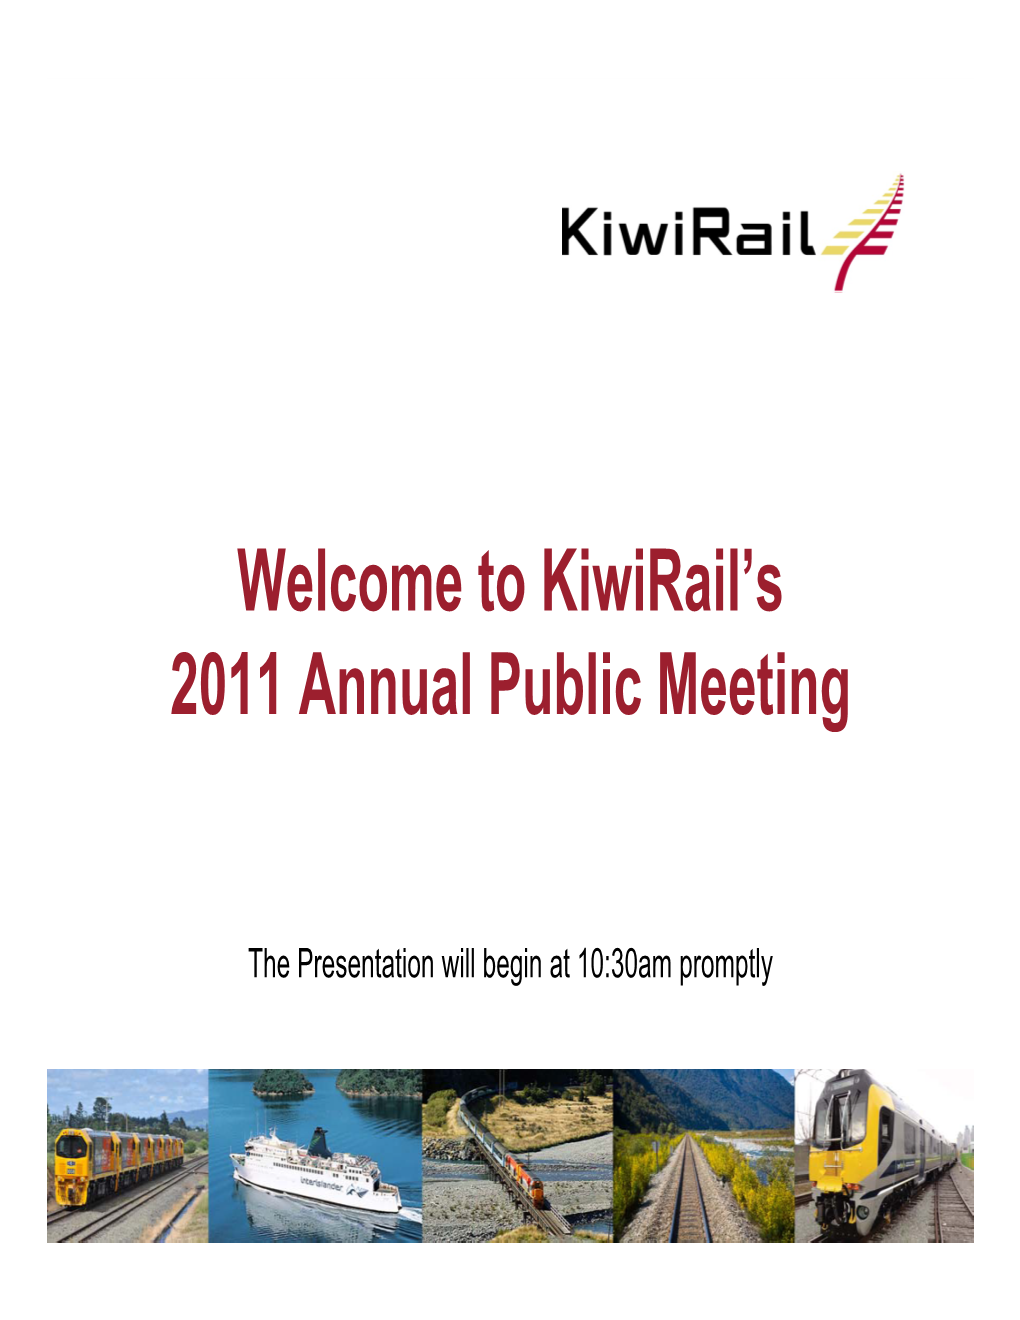 Kiwirail's 2011 Annual Public Meeting